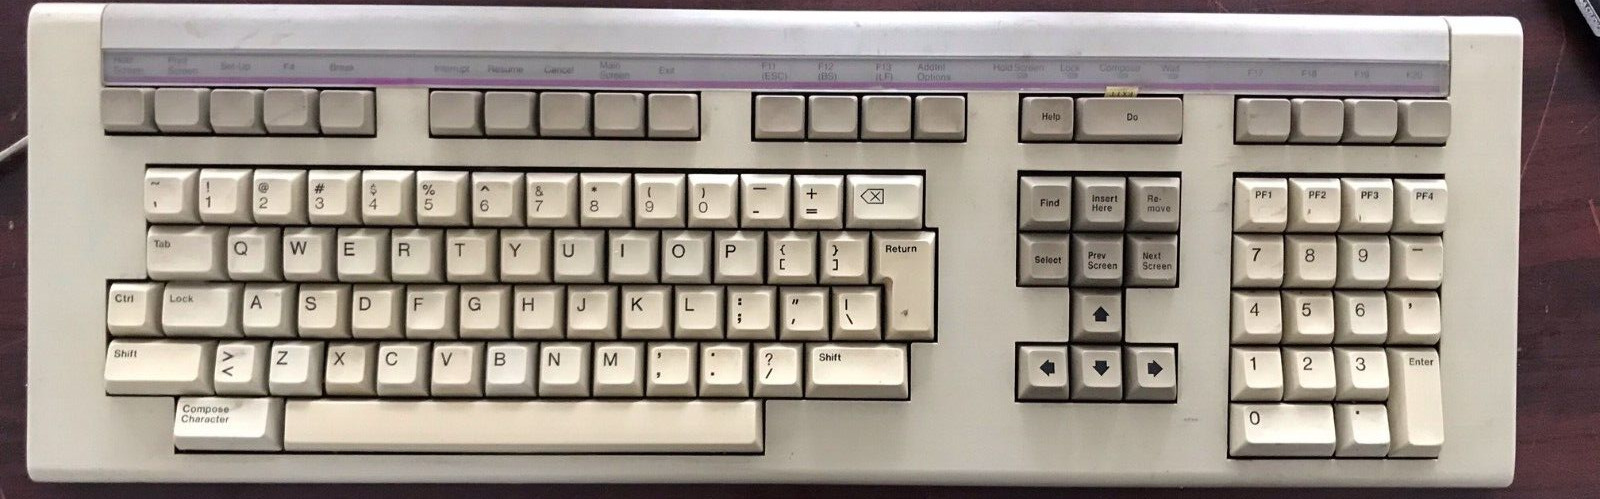 Vintage DEC computer keyboard LK201AA 